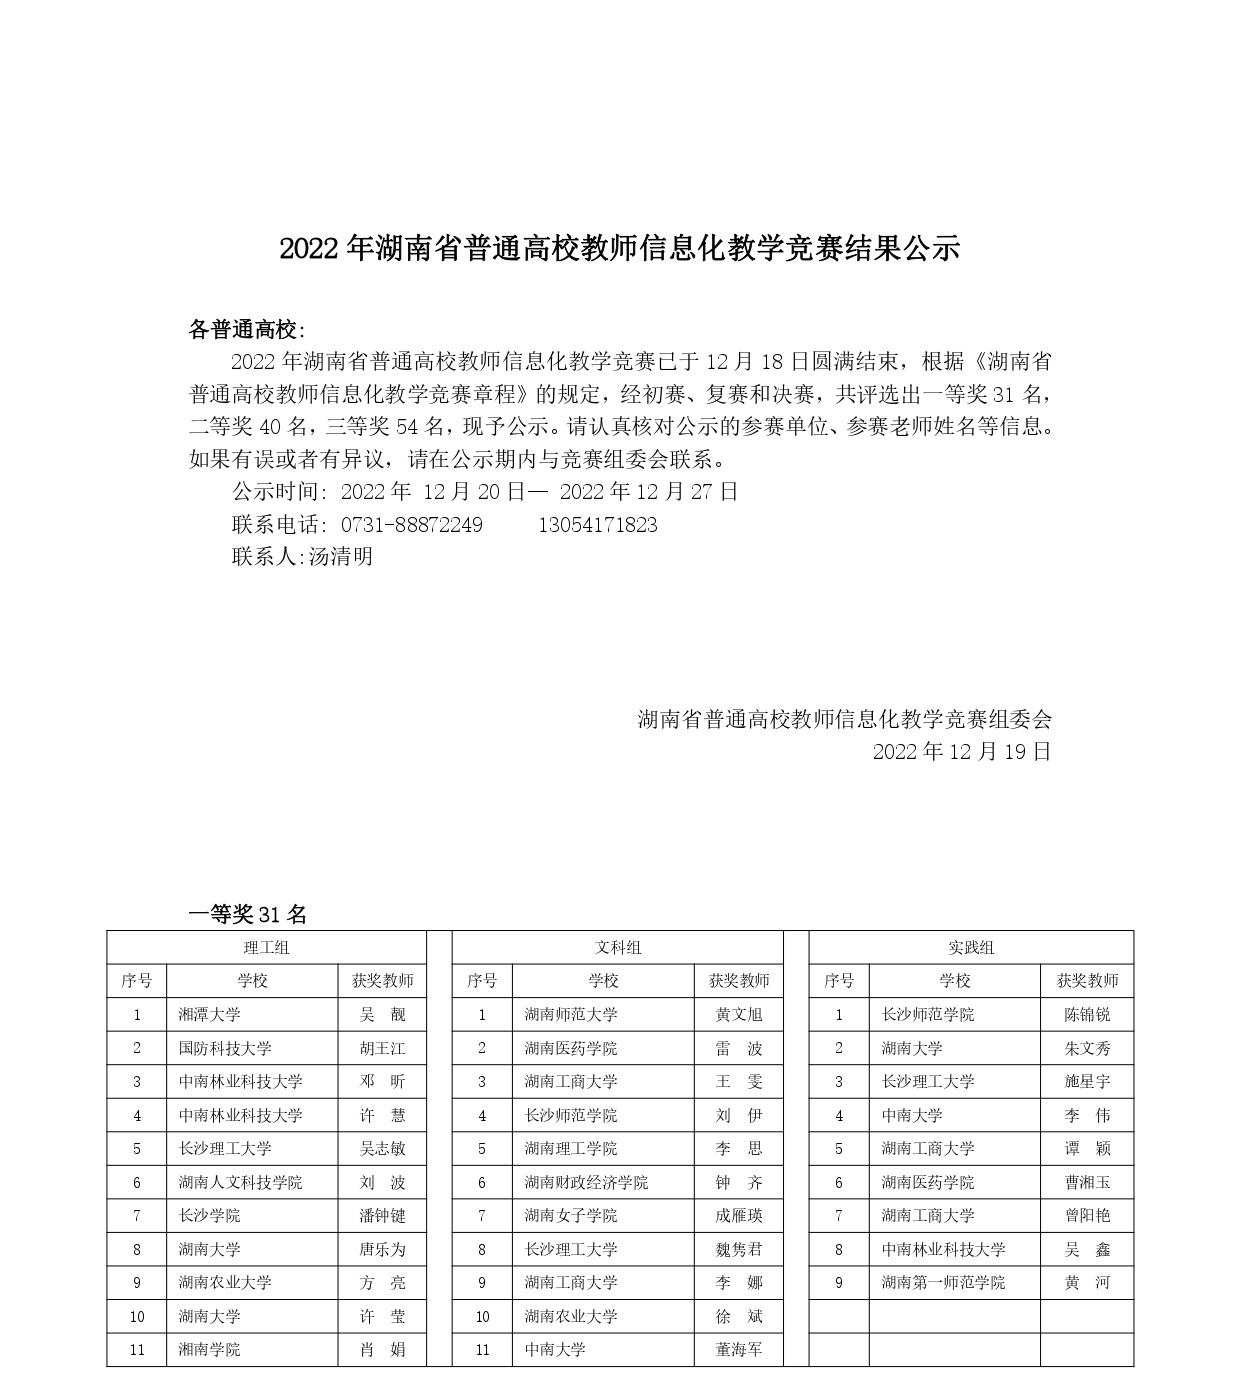 2022年湖南省高校教师信息化教学竞赛结果公示_page-0001.jpg